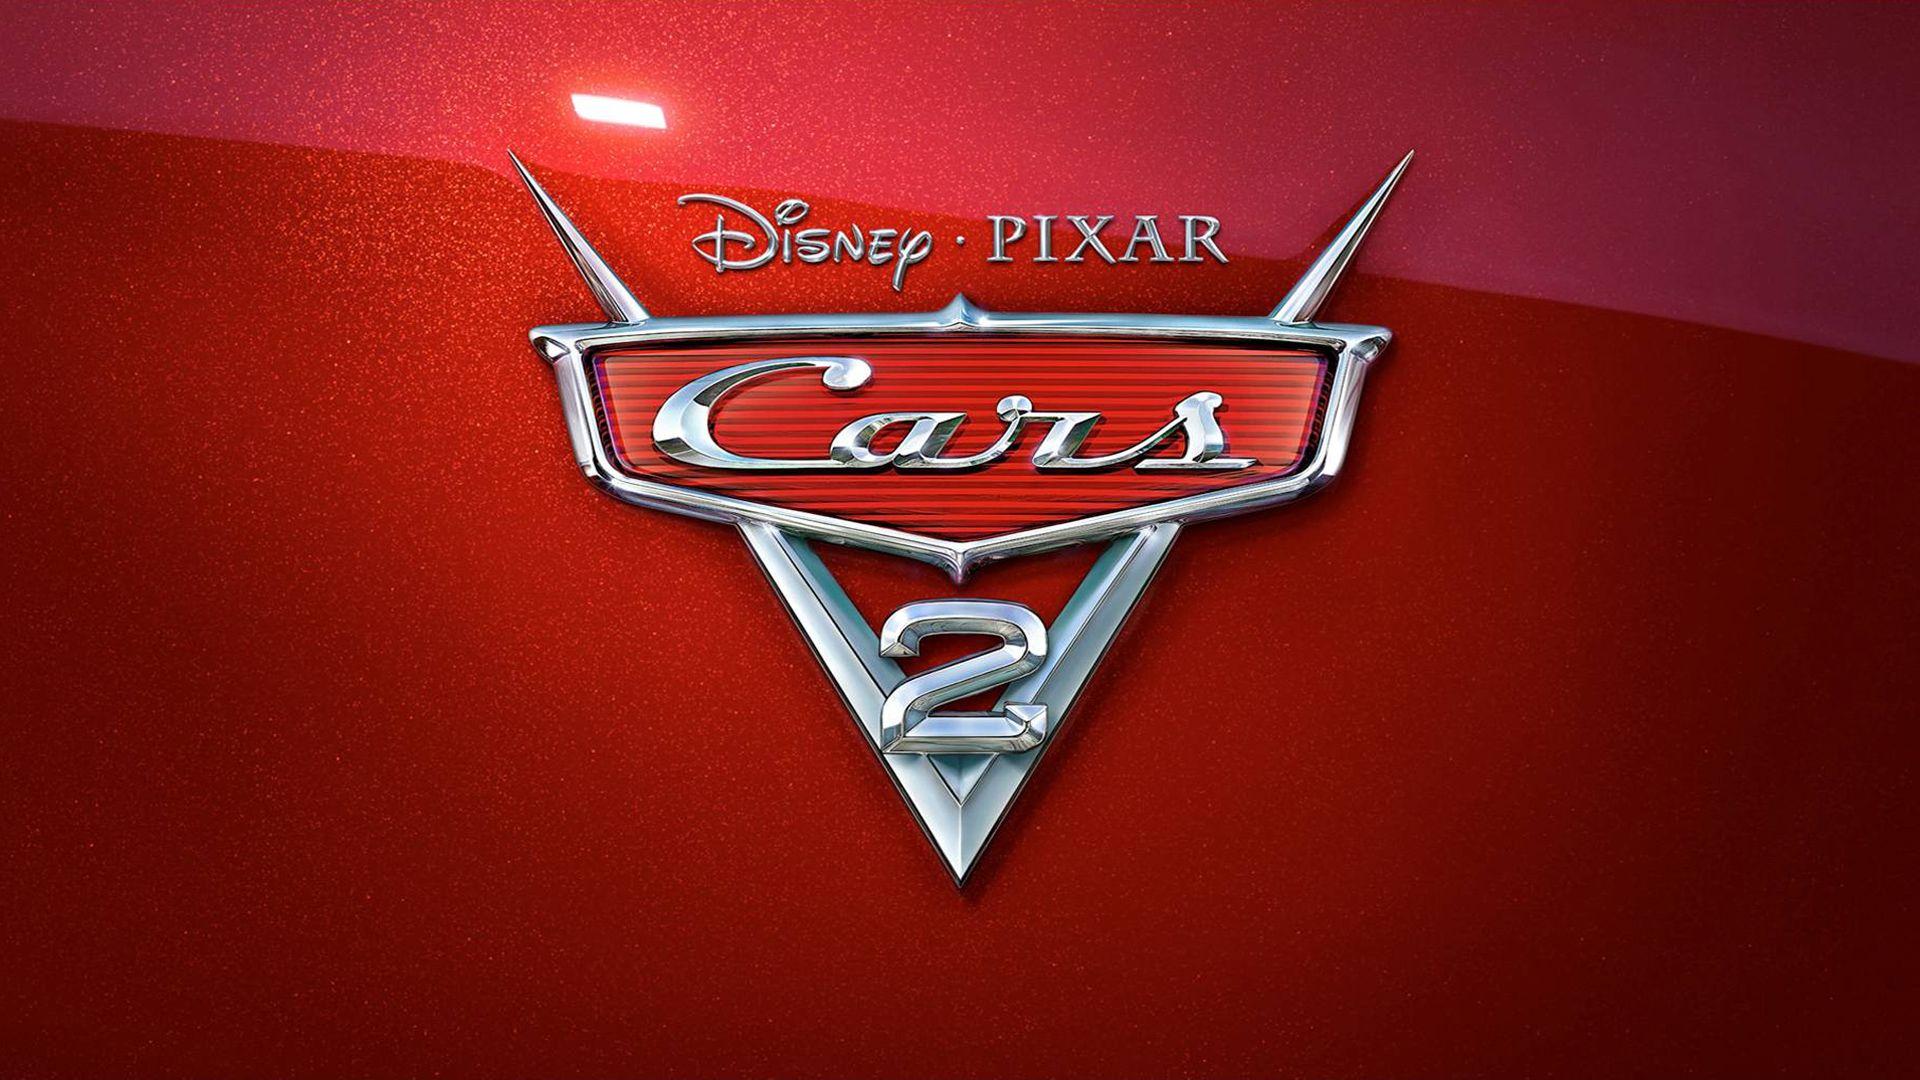 Disney Pixar Cars 2 2011 Wallpaper